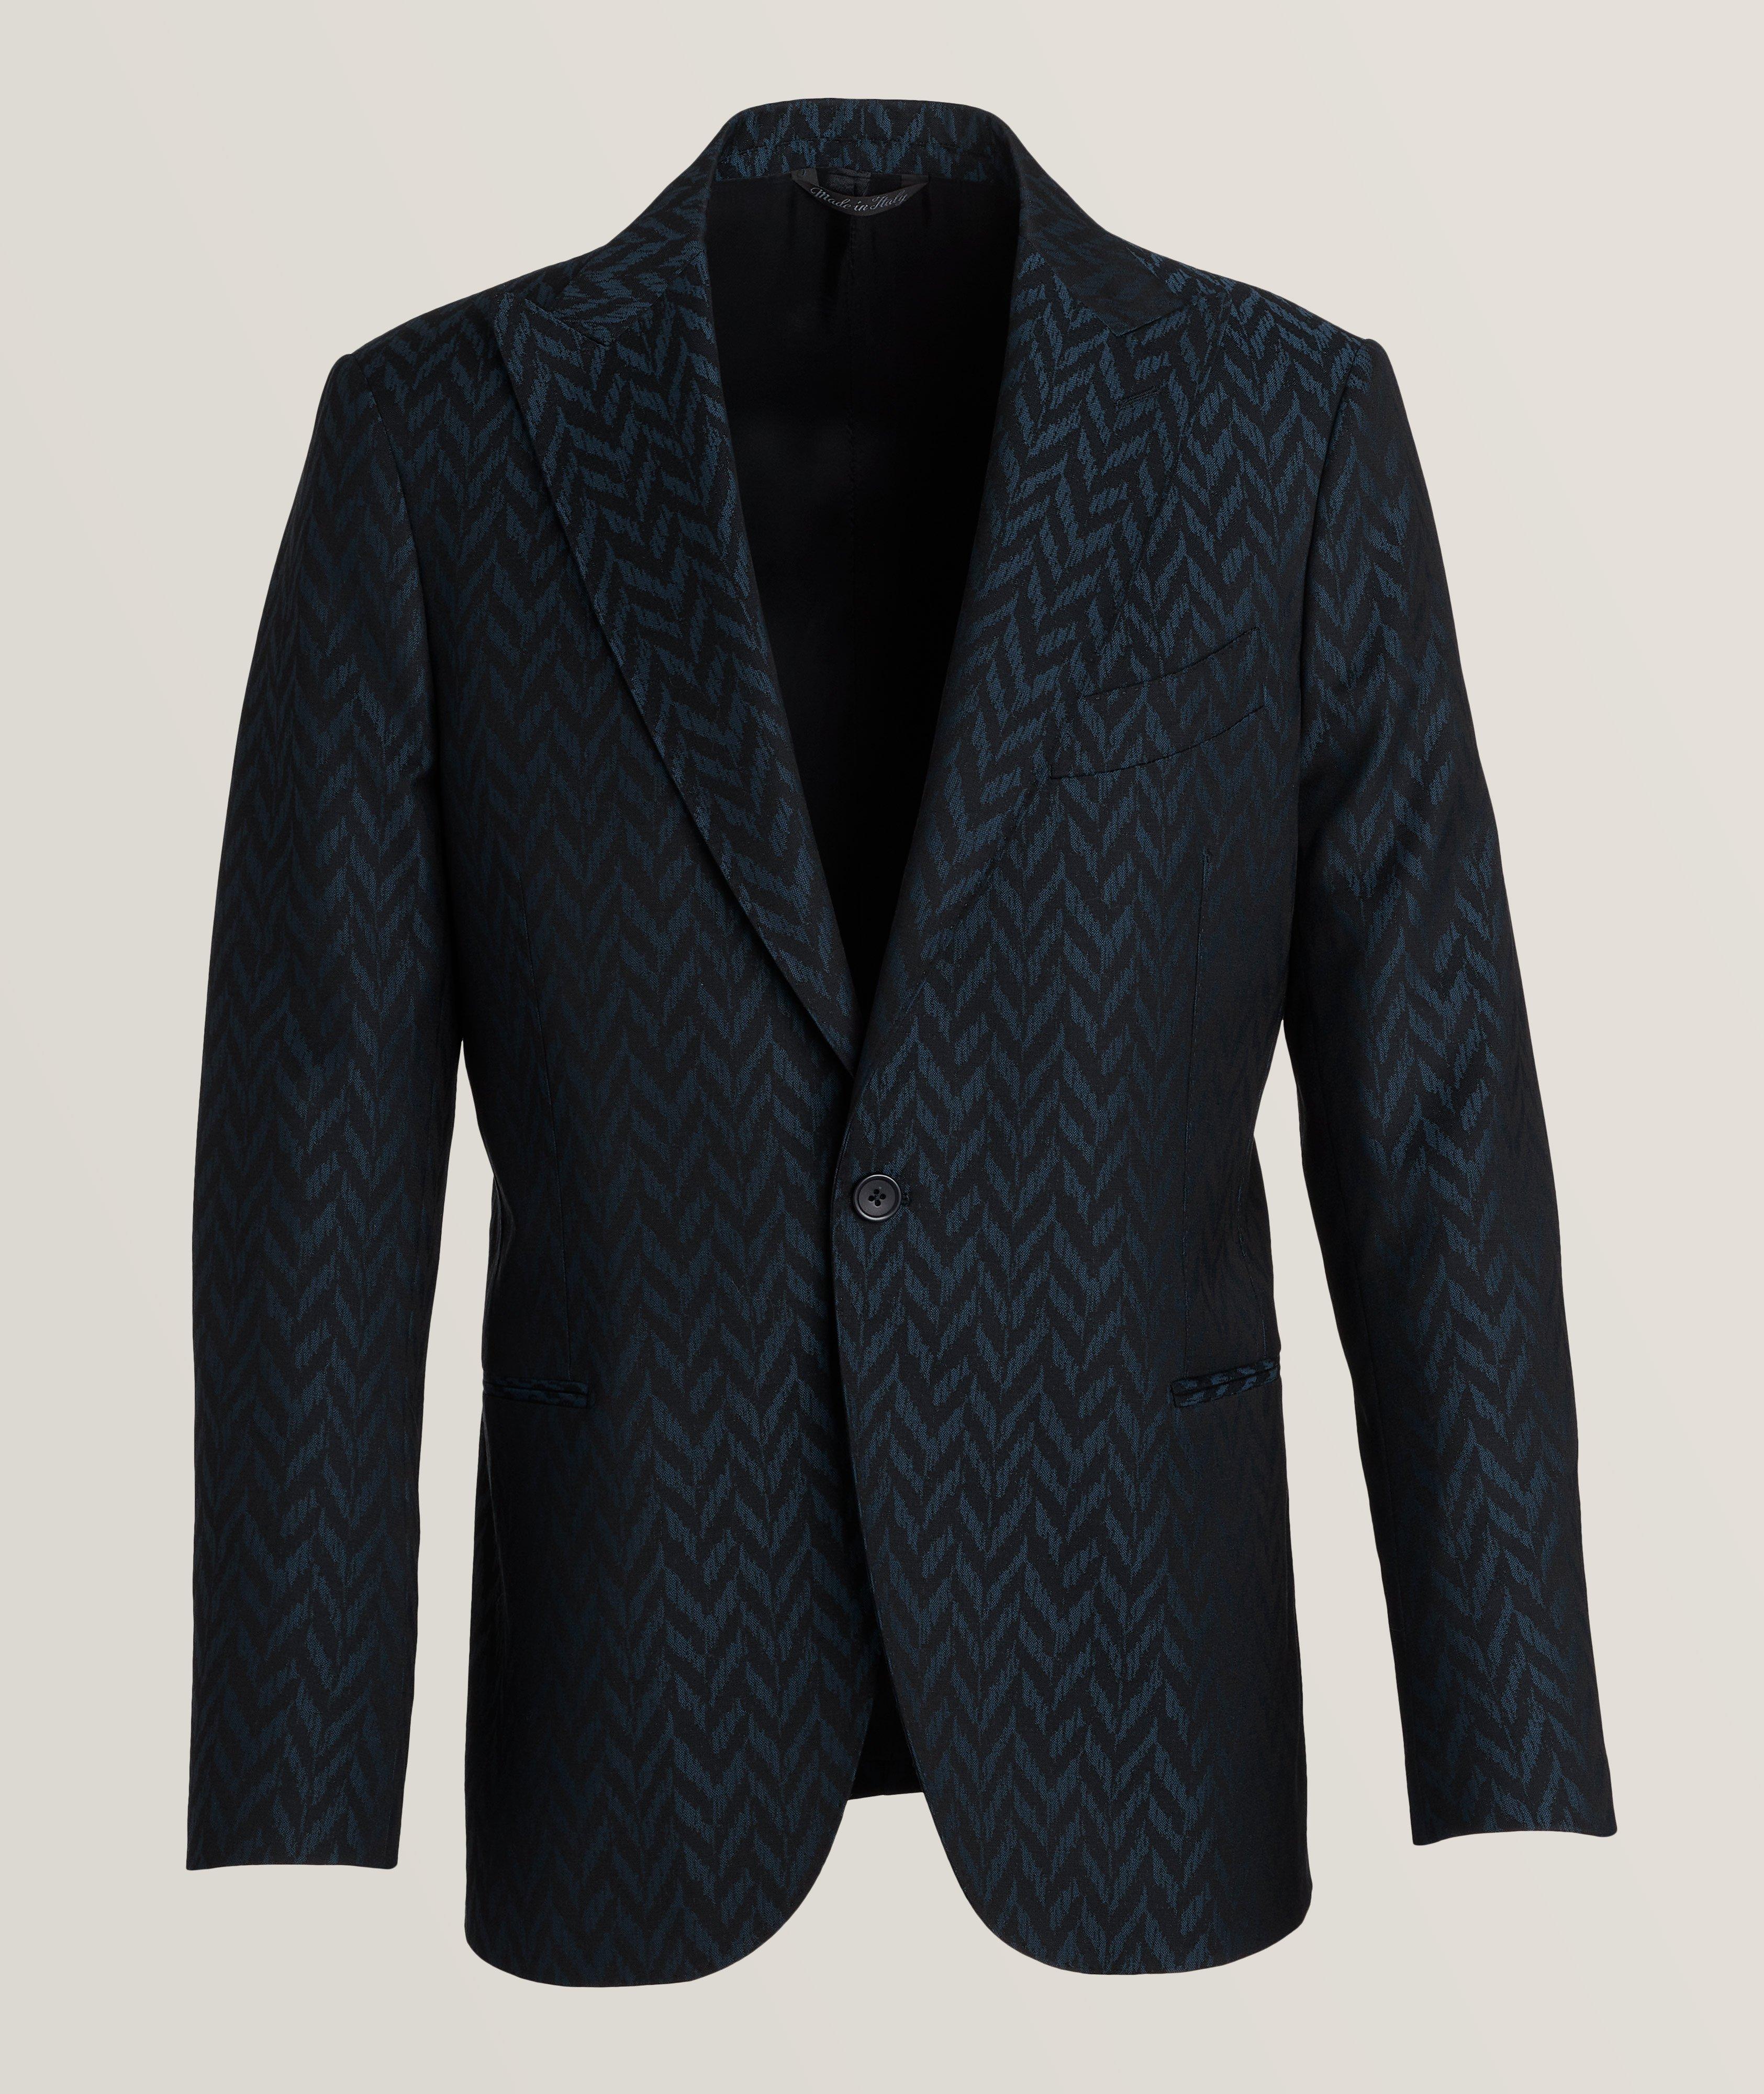 Harold Large Herringbone Jacquard Virgin Wool Suit Jacket